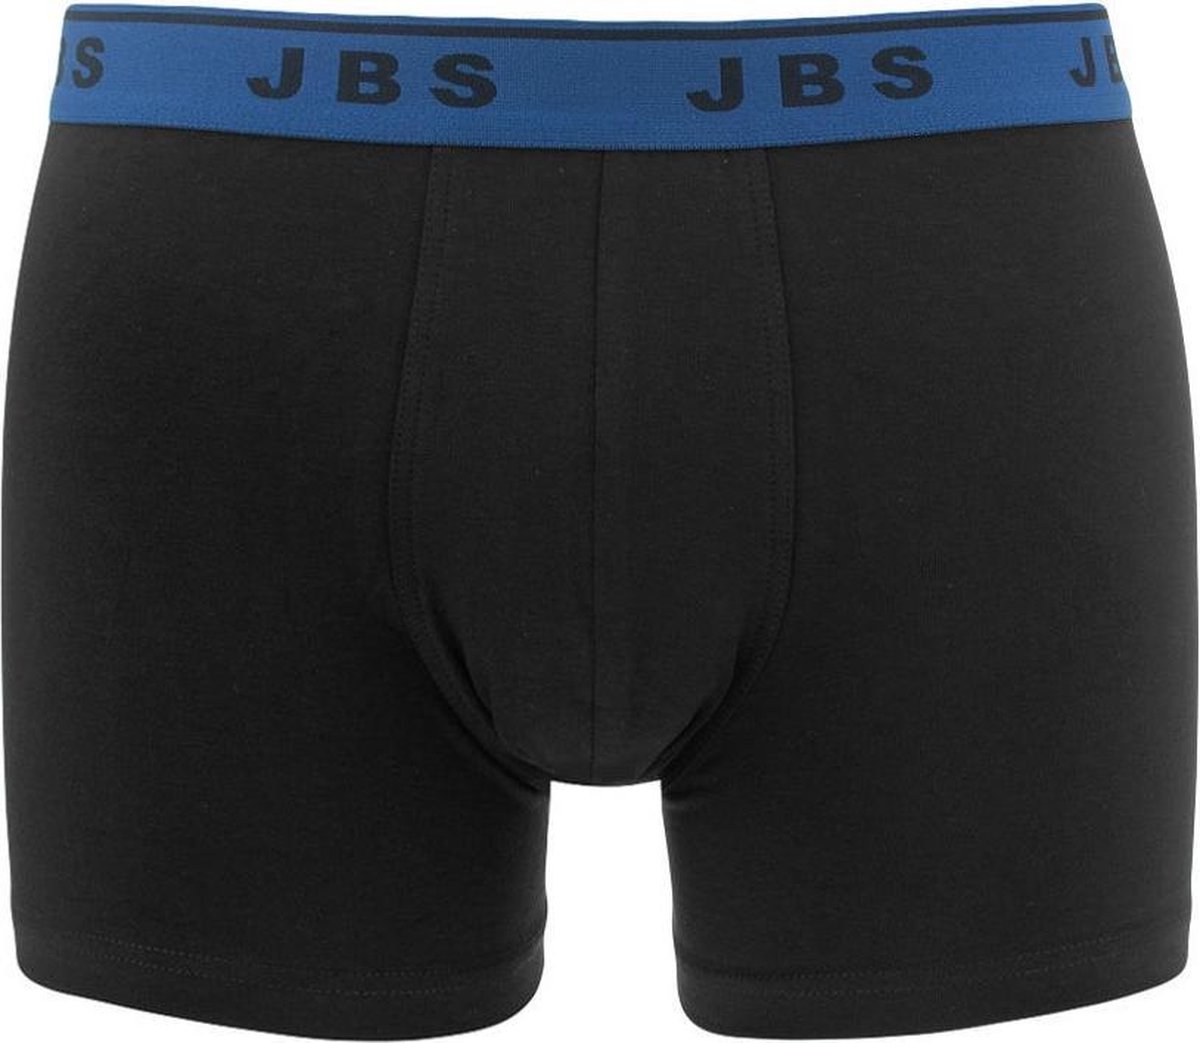 JBS - 3-pack boxershorts zwart combi - maat L